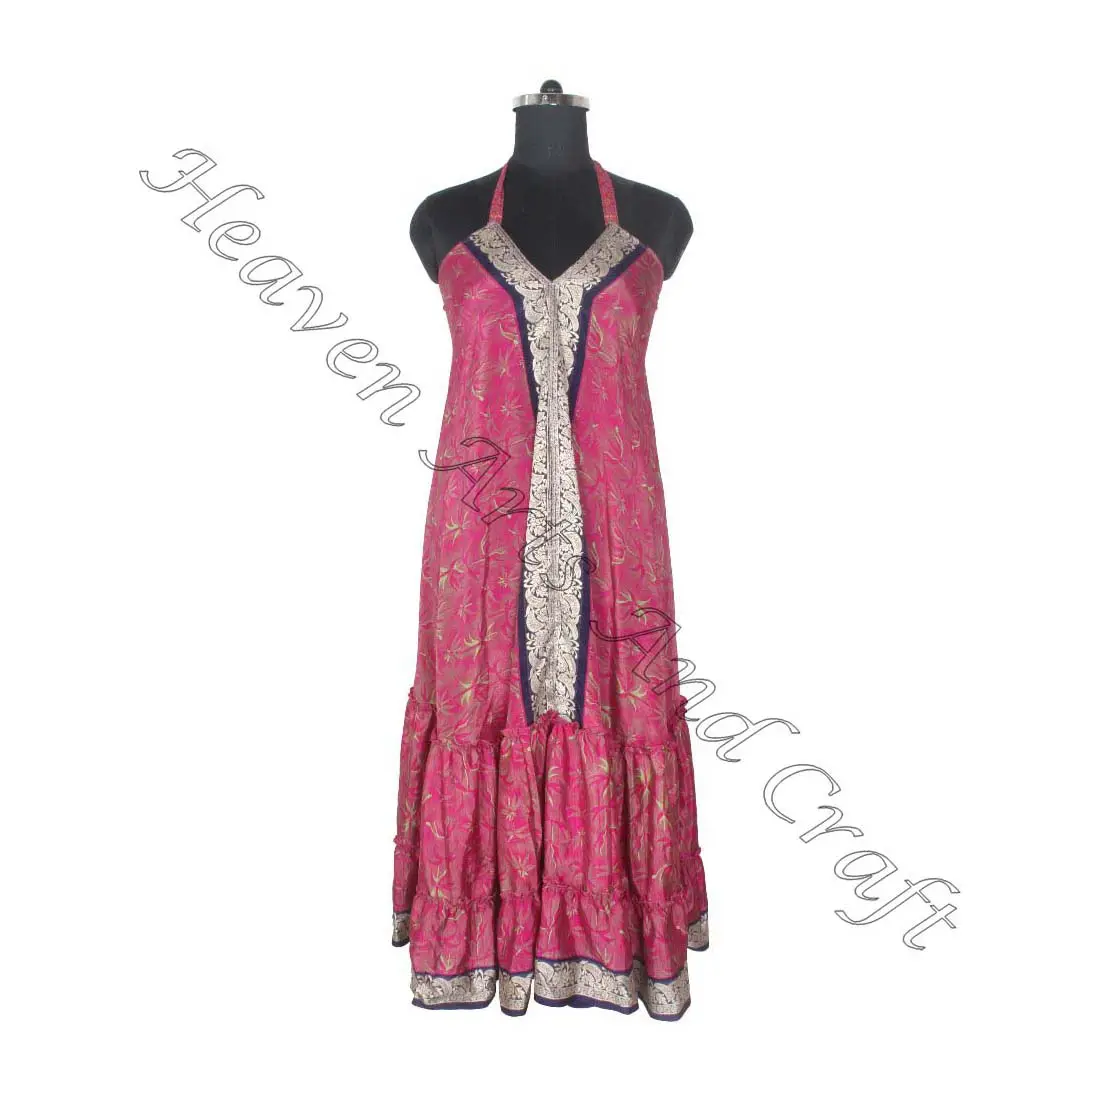 SD024 Saree / Sari / Shari Indian & Pakistani Clothing from India Hippy Boho Manufacturer & Exporter Of Women Wear Vintage Sari